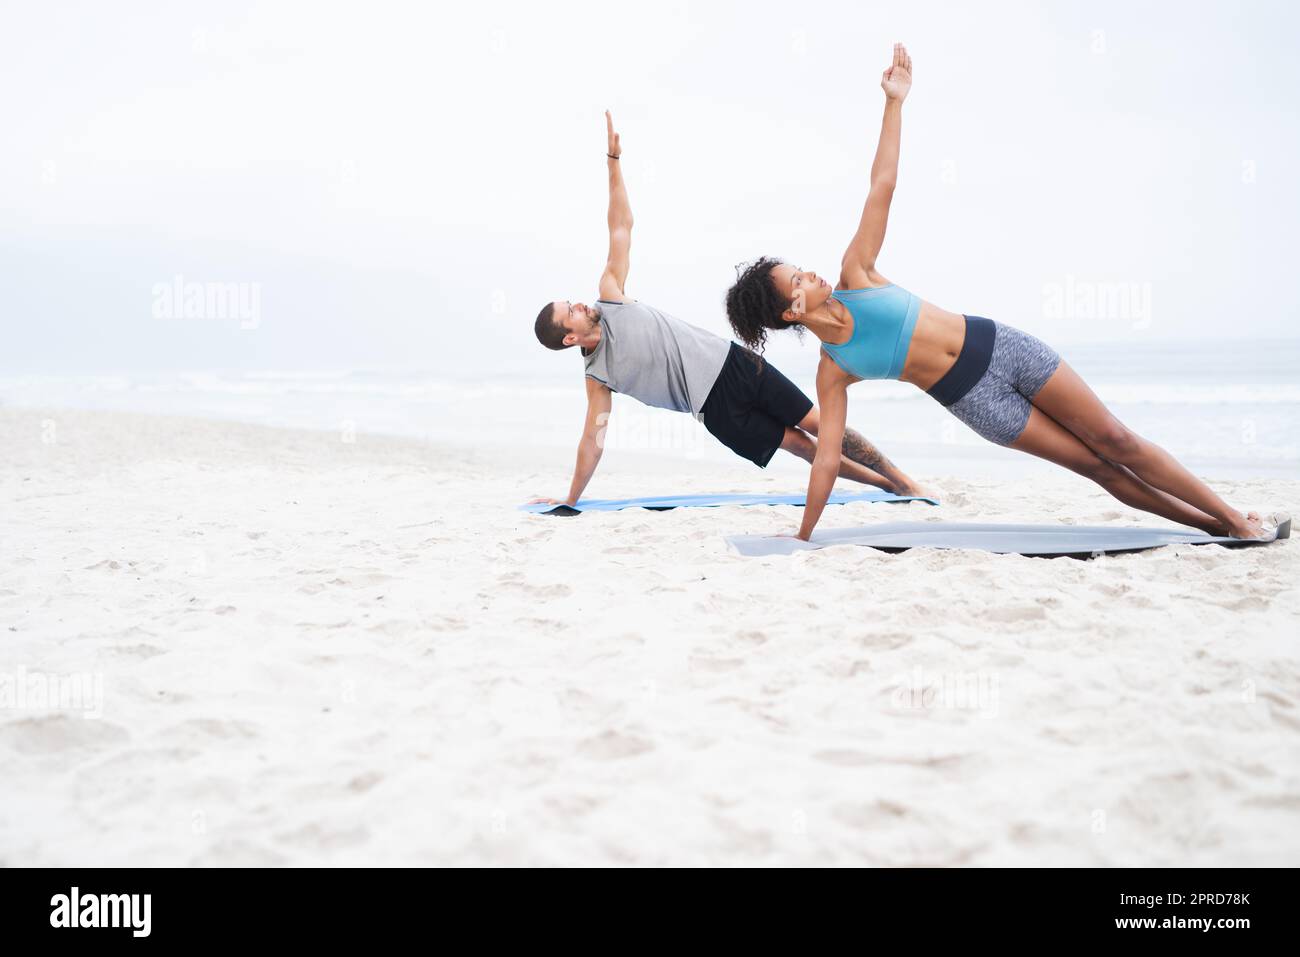 Gemeinsam einen aktiveren Lebensstil führen. Ein junger Mann und eine junge Frau üben gemeinsam am Strand Yoga. Stockfoto